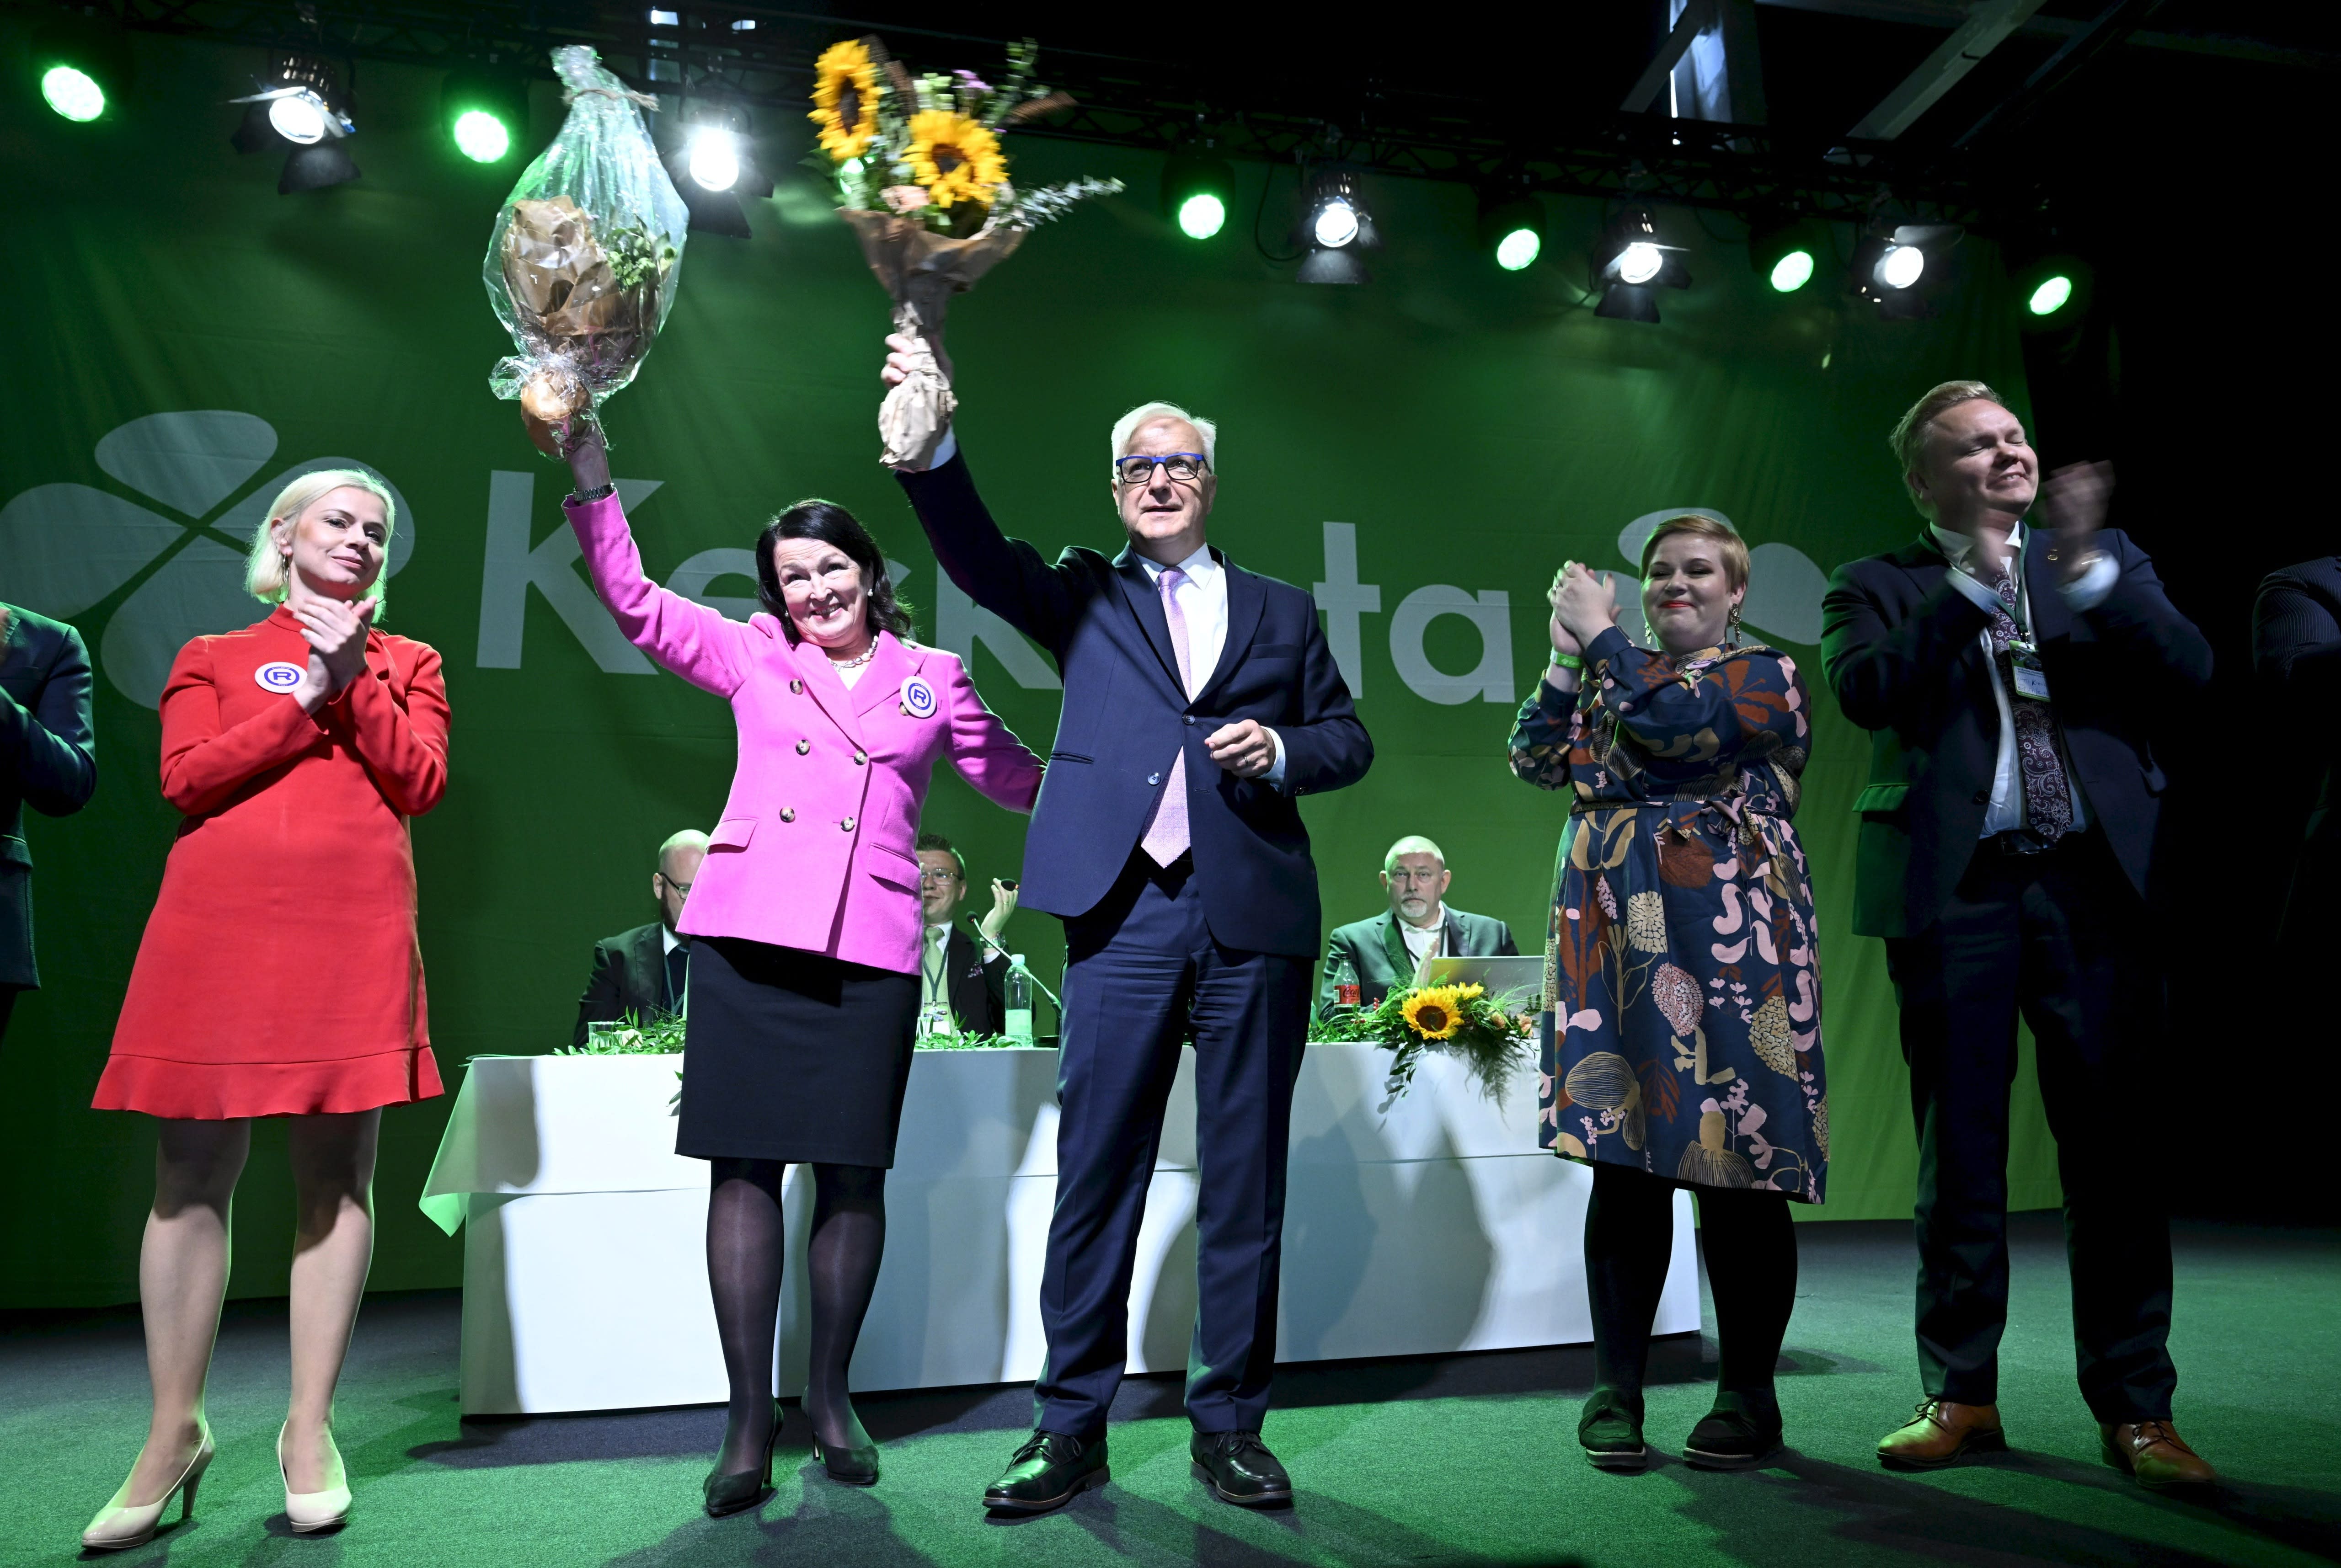 Das Zentrum unterstützt Olli Rehn als Präsidentschaftskandidaten